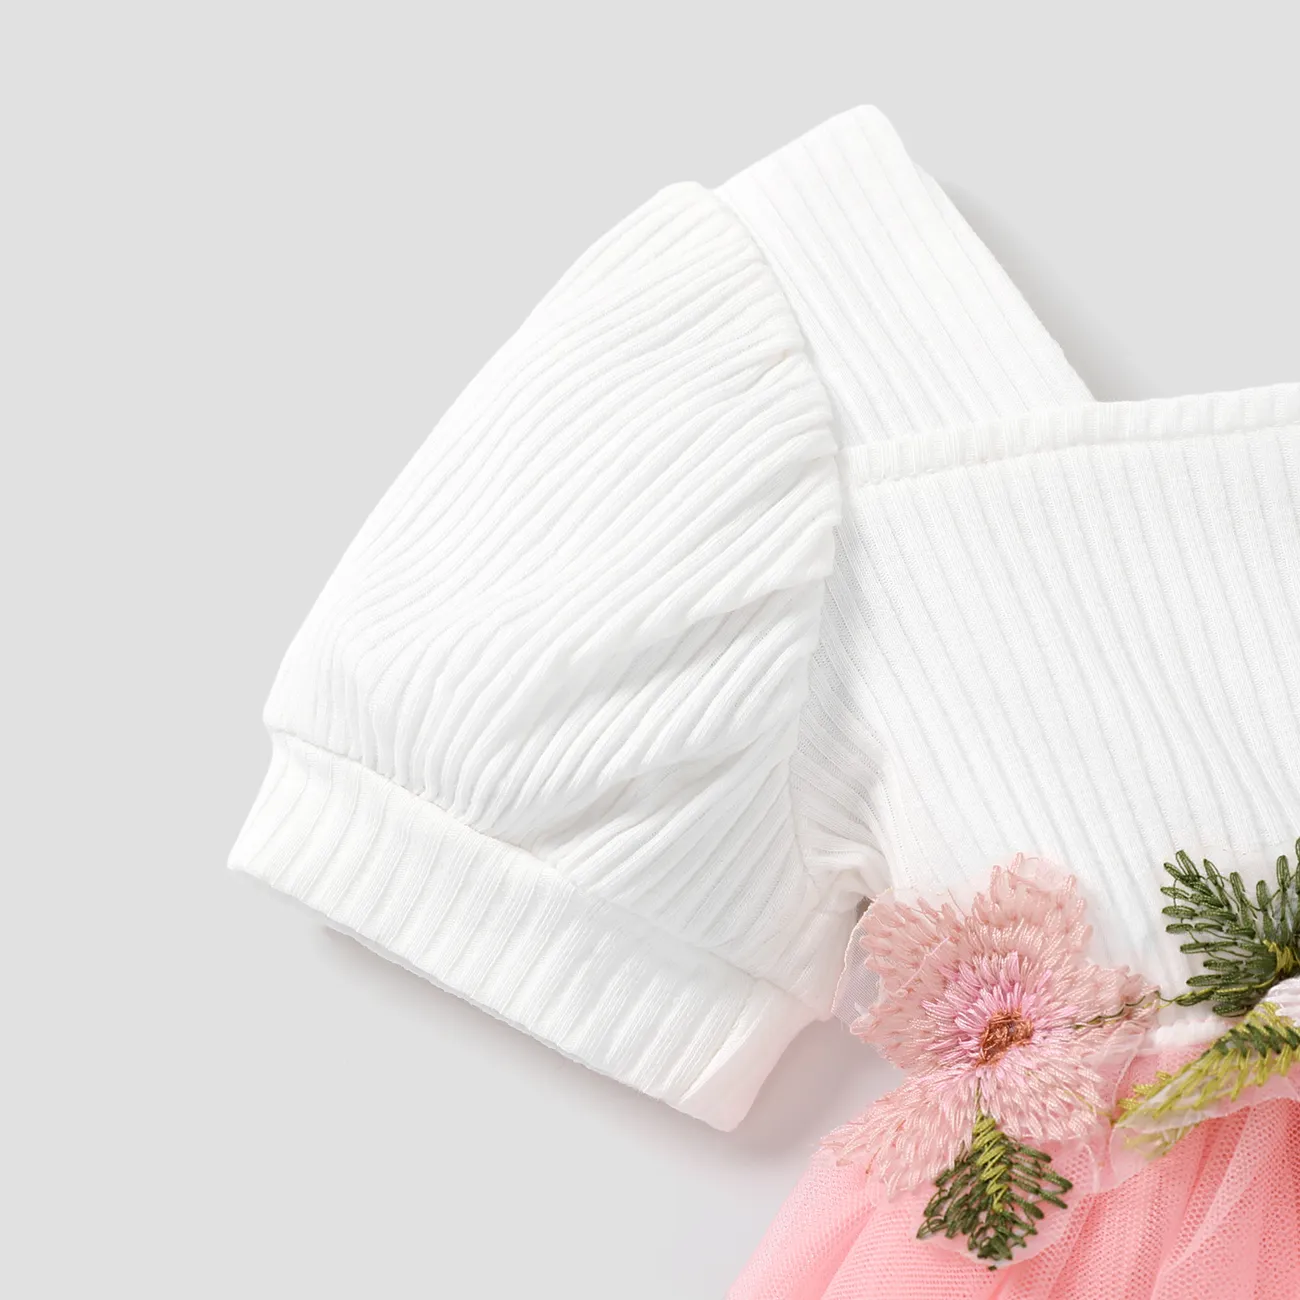 Bébé Couture de tissus Fleurs et plantes tropicales Doux Manches courtes Robe Rose big image 1